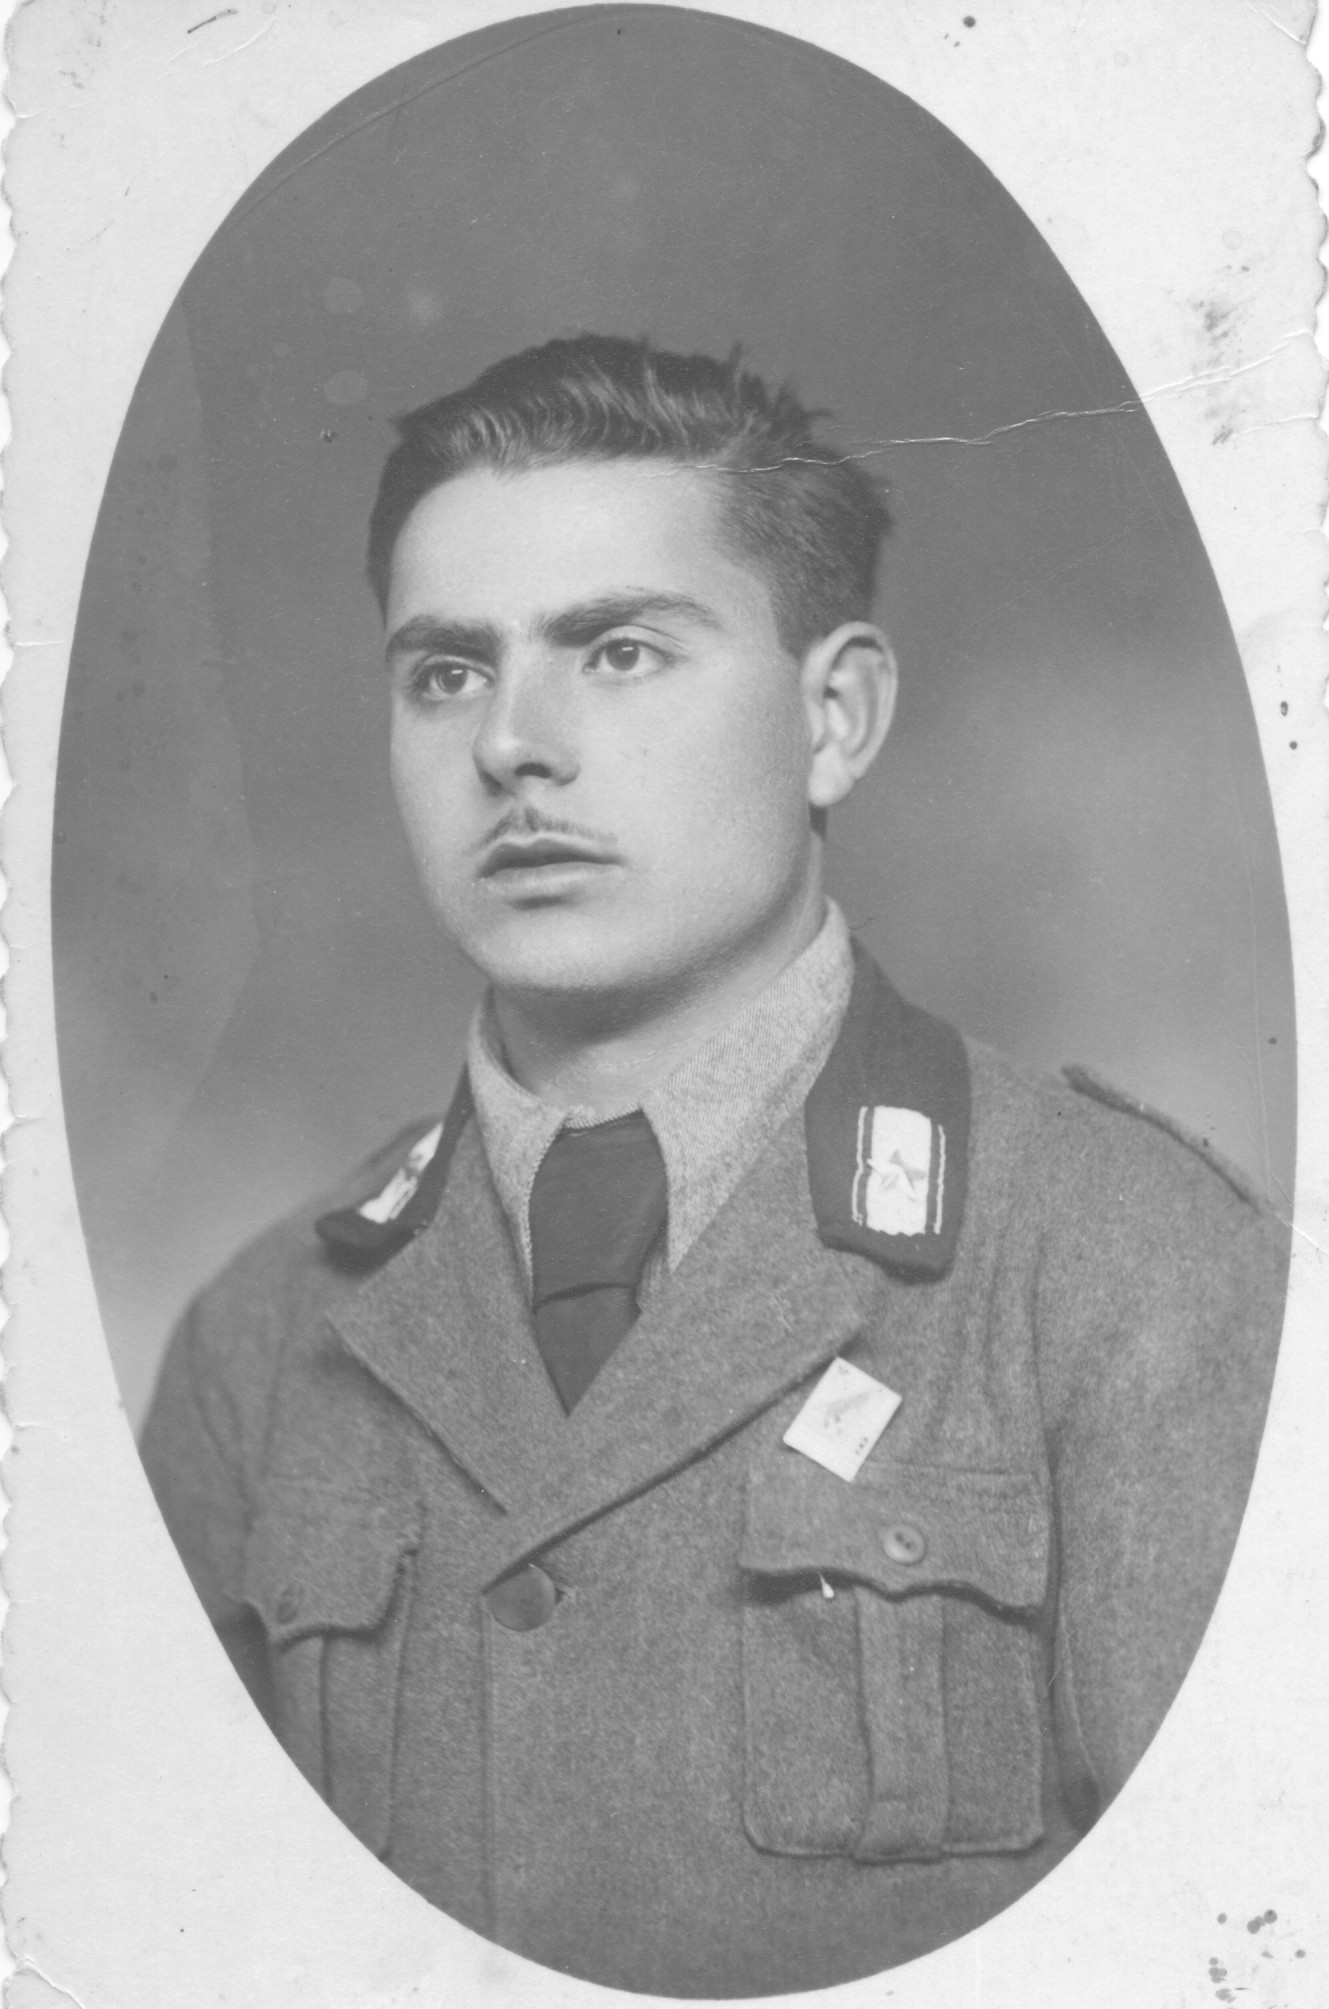 Soldato caduto in guerra - anni '40